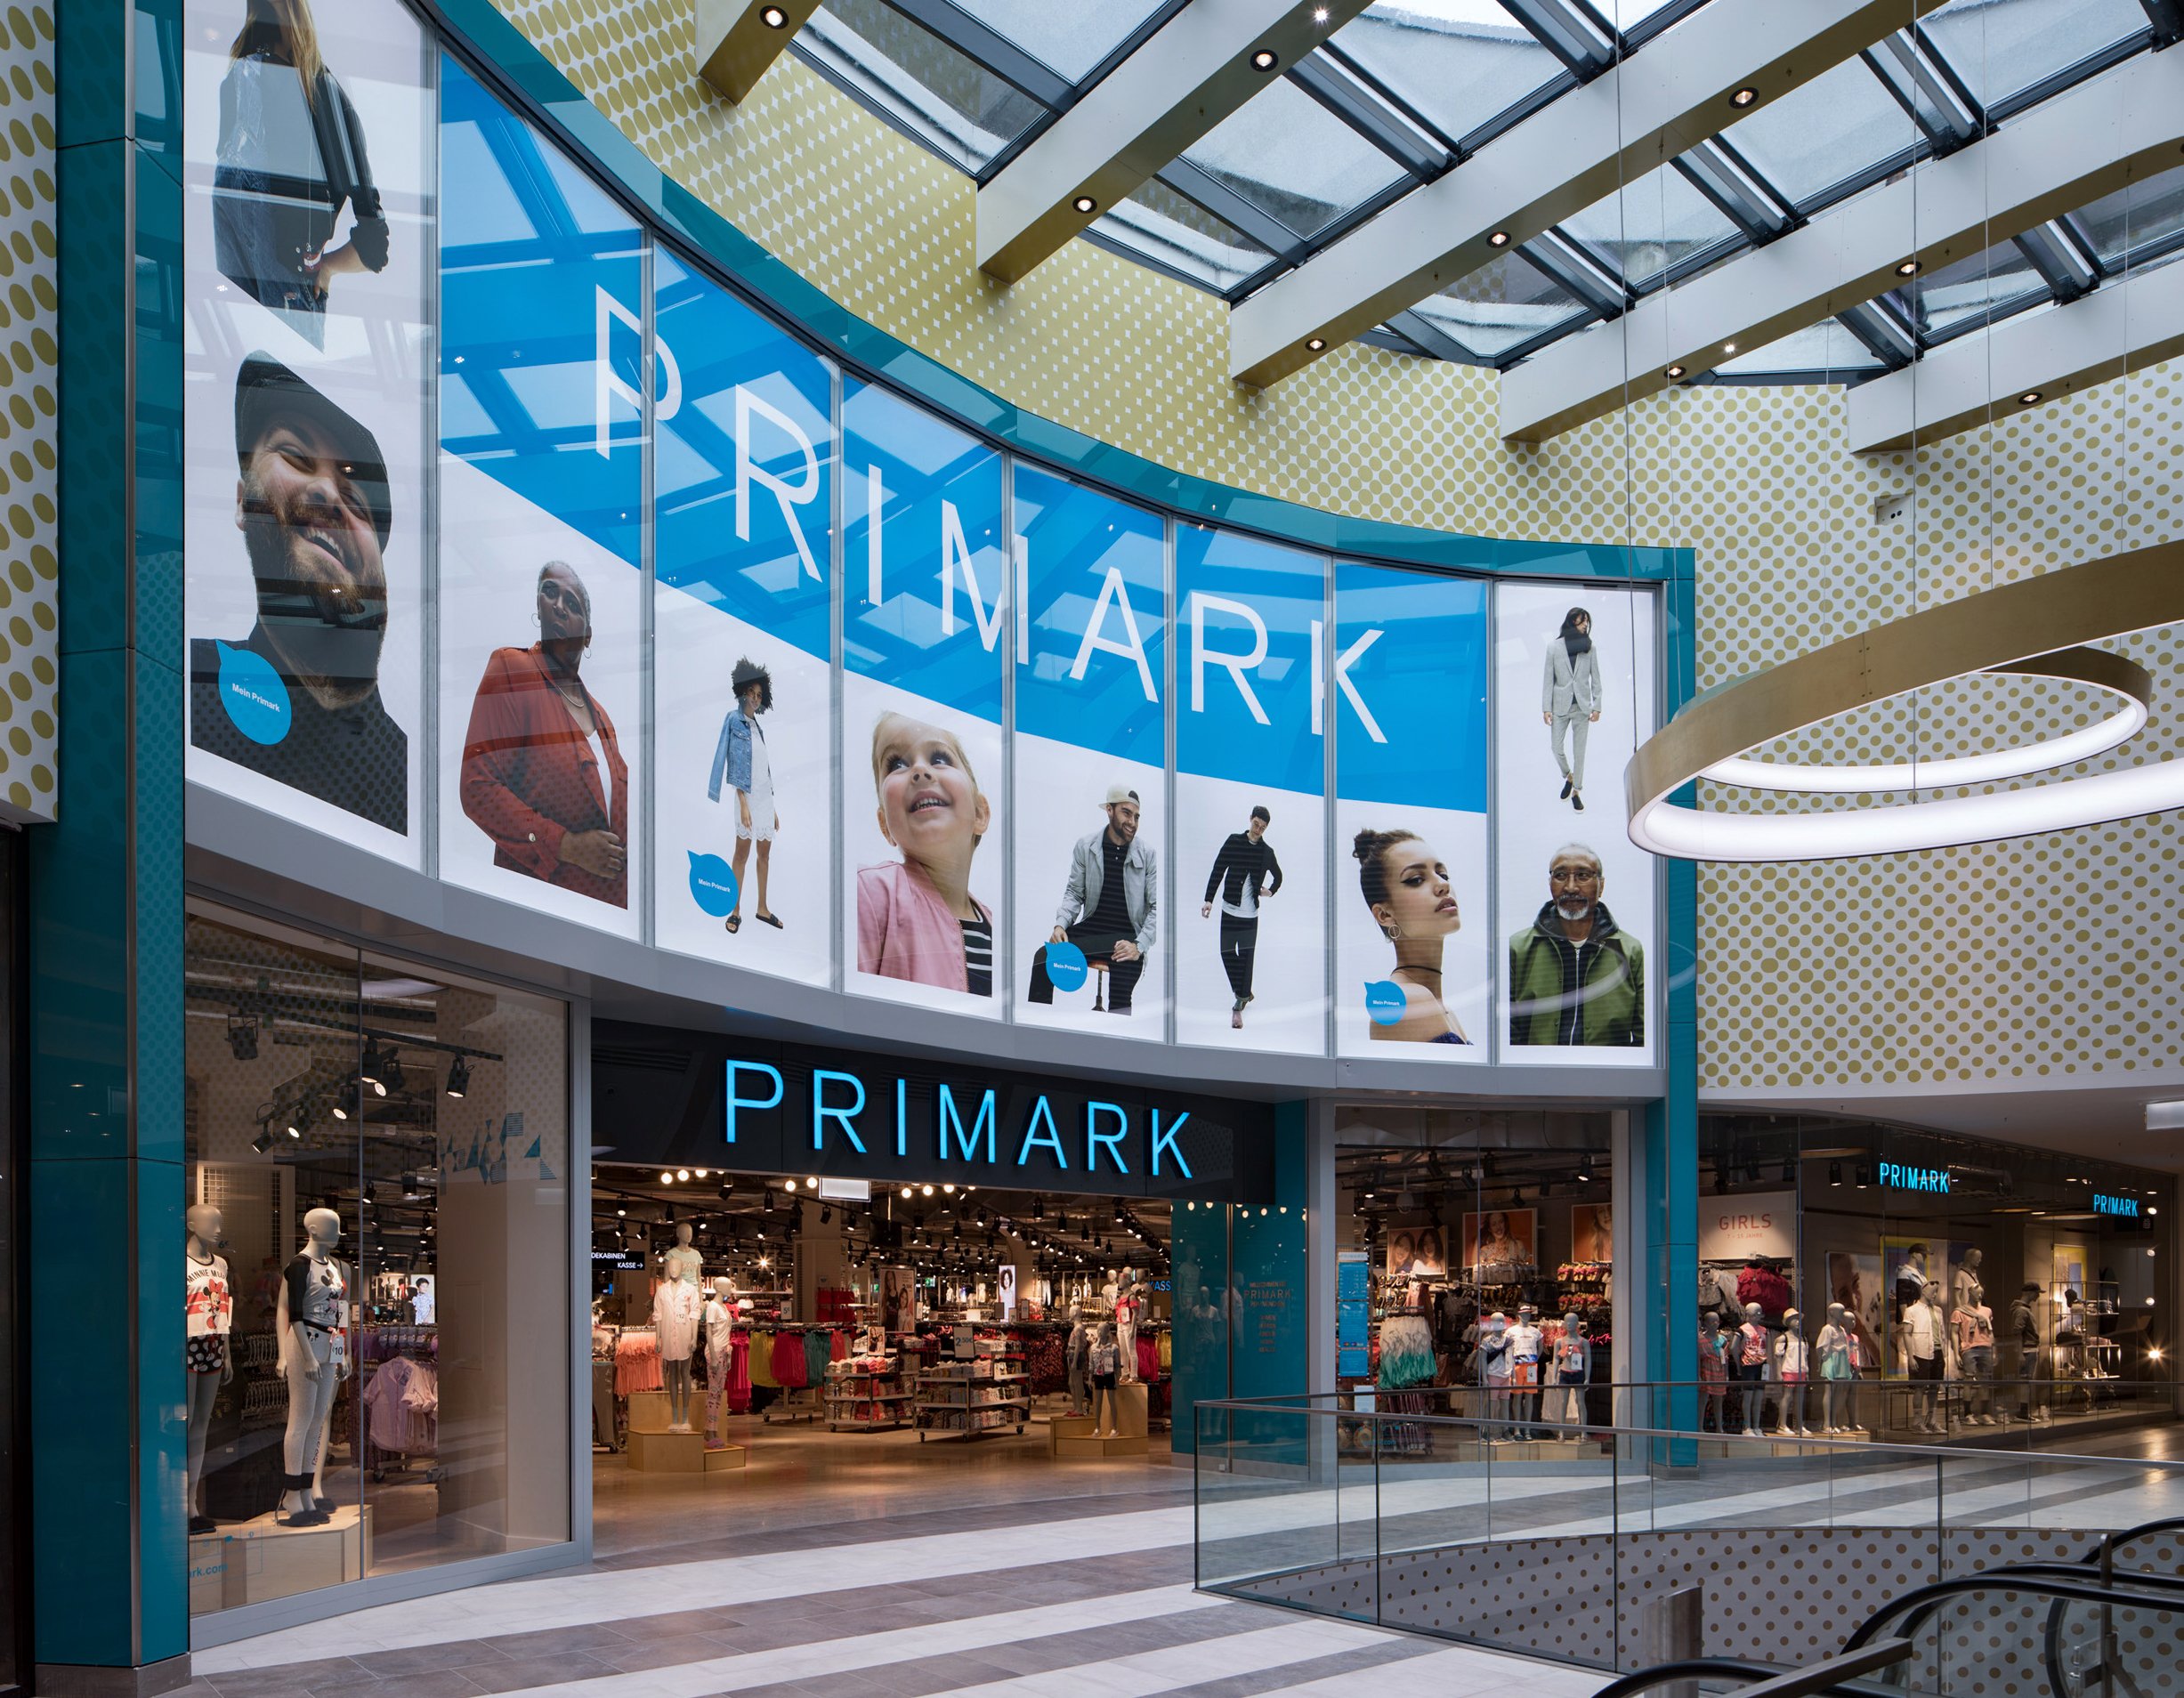 Primarkt / Primark To Open 18 New Stores In 2020 Retailsee Com ...